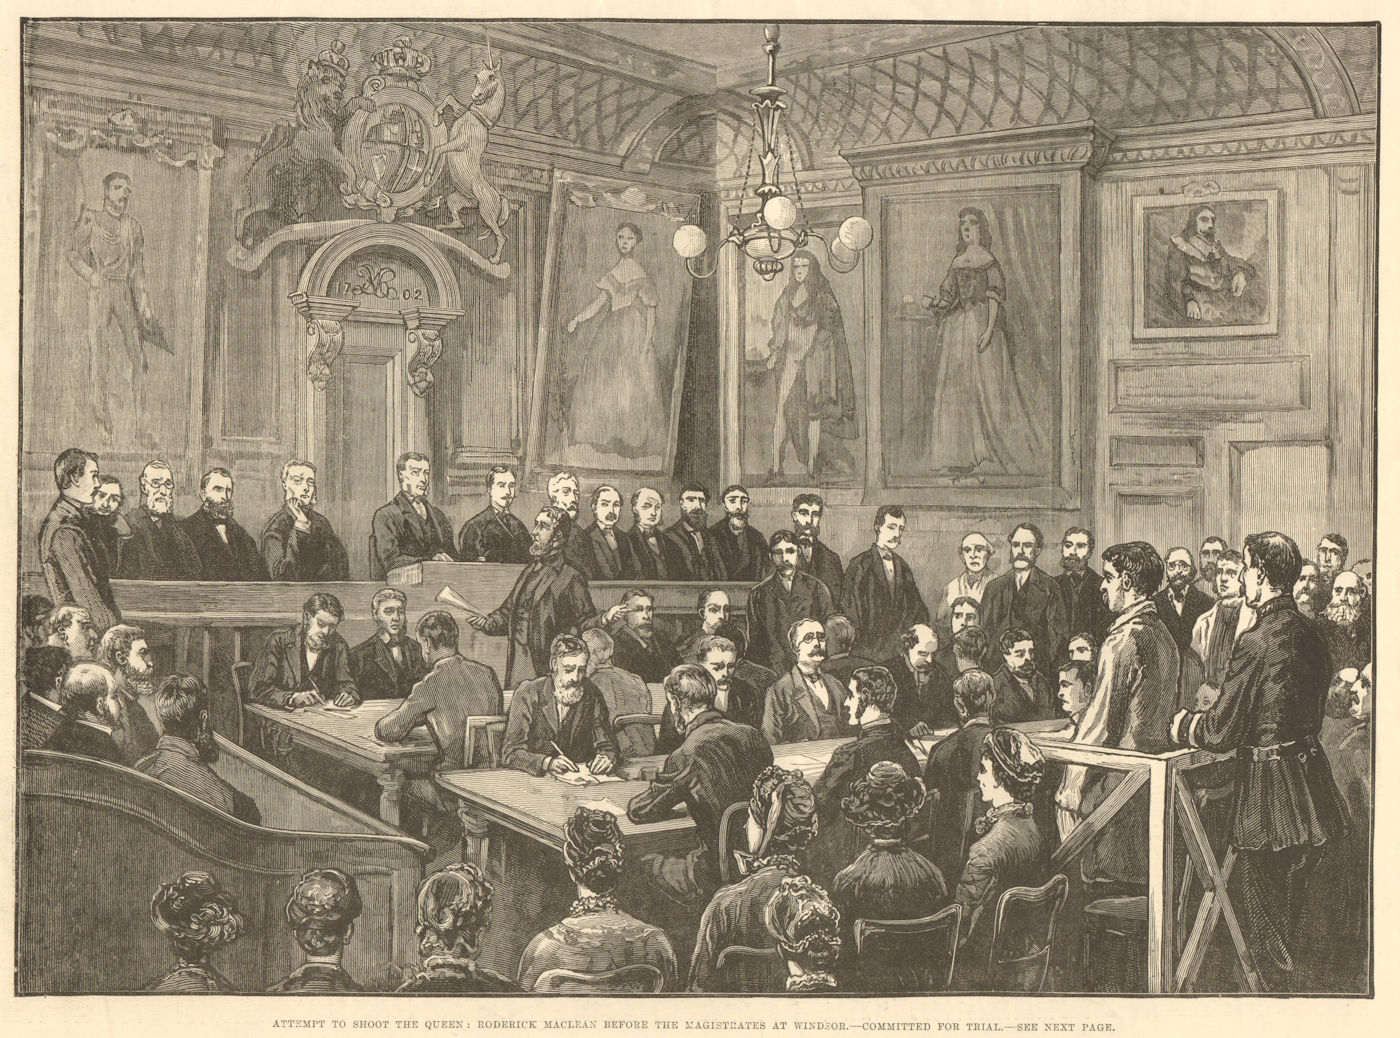 Attempt to shoot Queen Victoria: Roderick Maclean in court, Windsor 1882